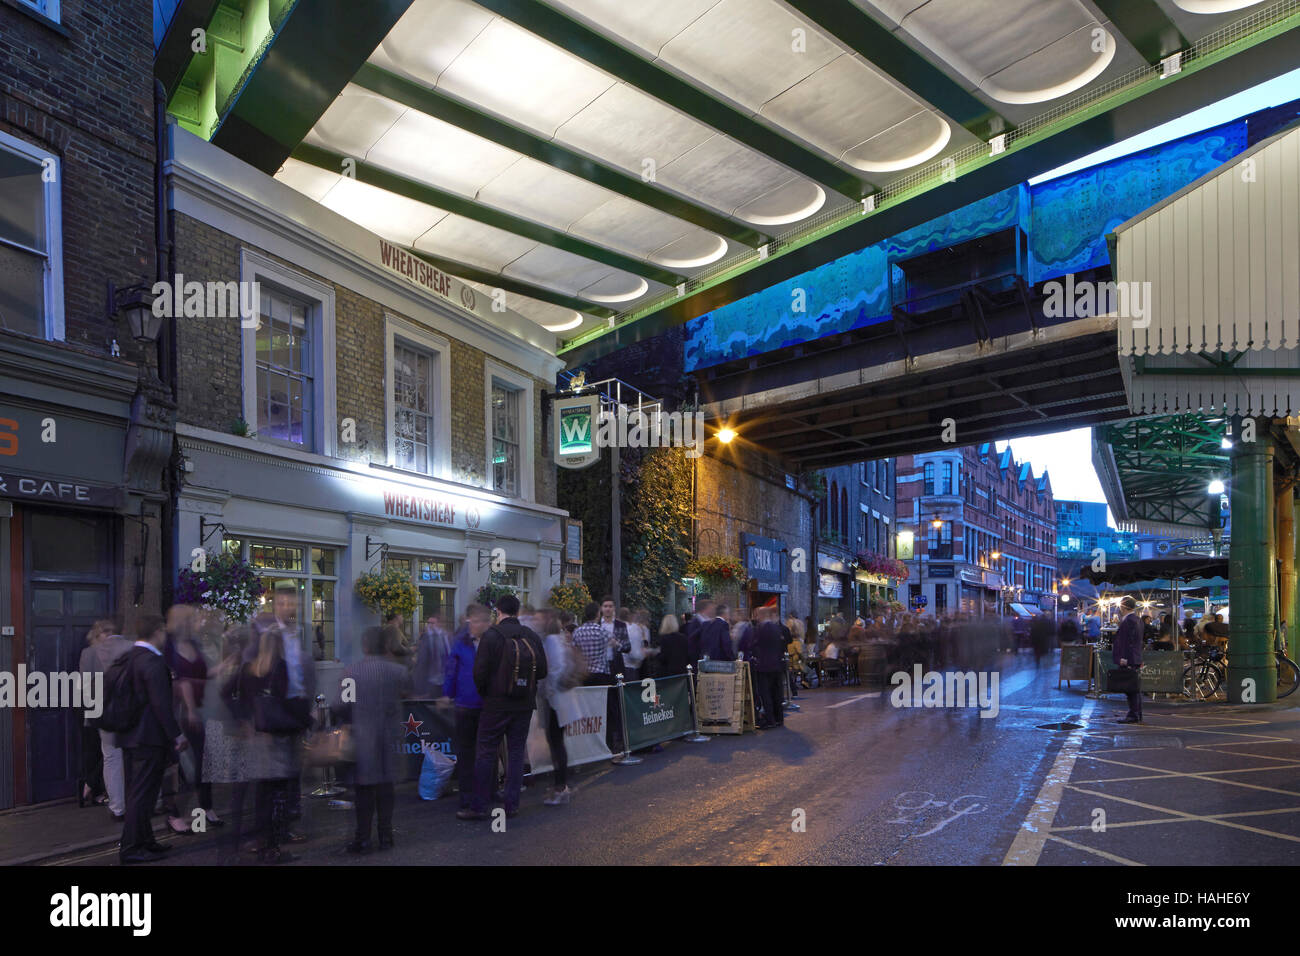 Twilight-Ansichten rund um London Borough Market. Architektonische Lager, verschiedene, Vereinigtes Königreich. Architekt: n/a, 2016. Stockfoto